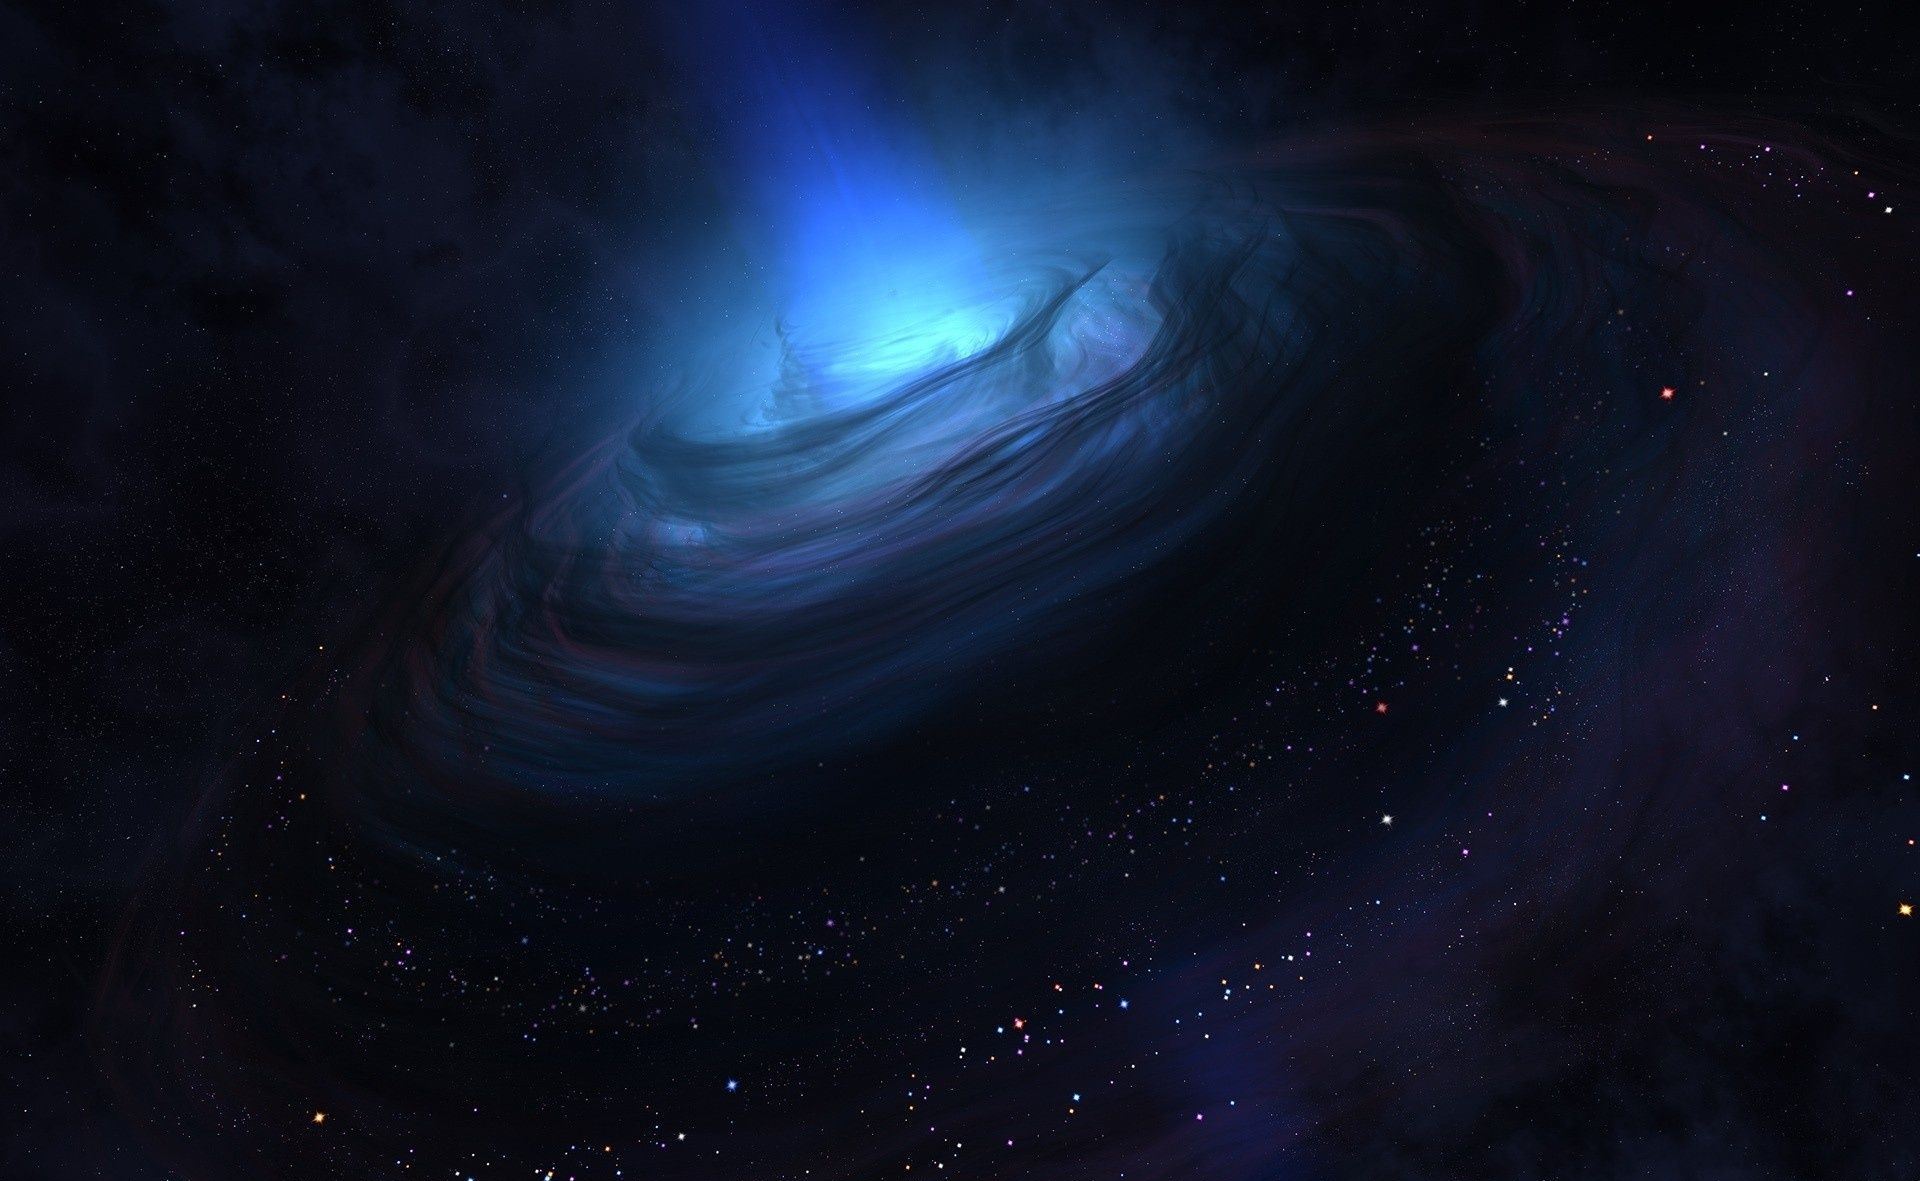 بهترین تصاویر سیاه چاله فضایی با کیفیت 4k